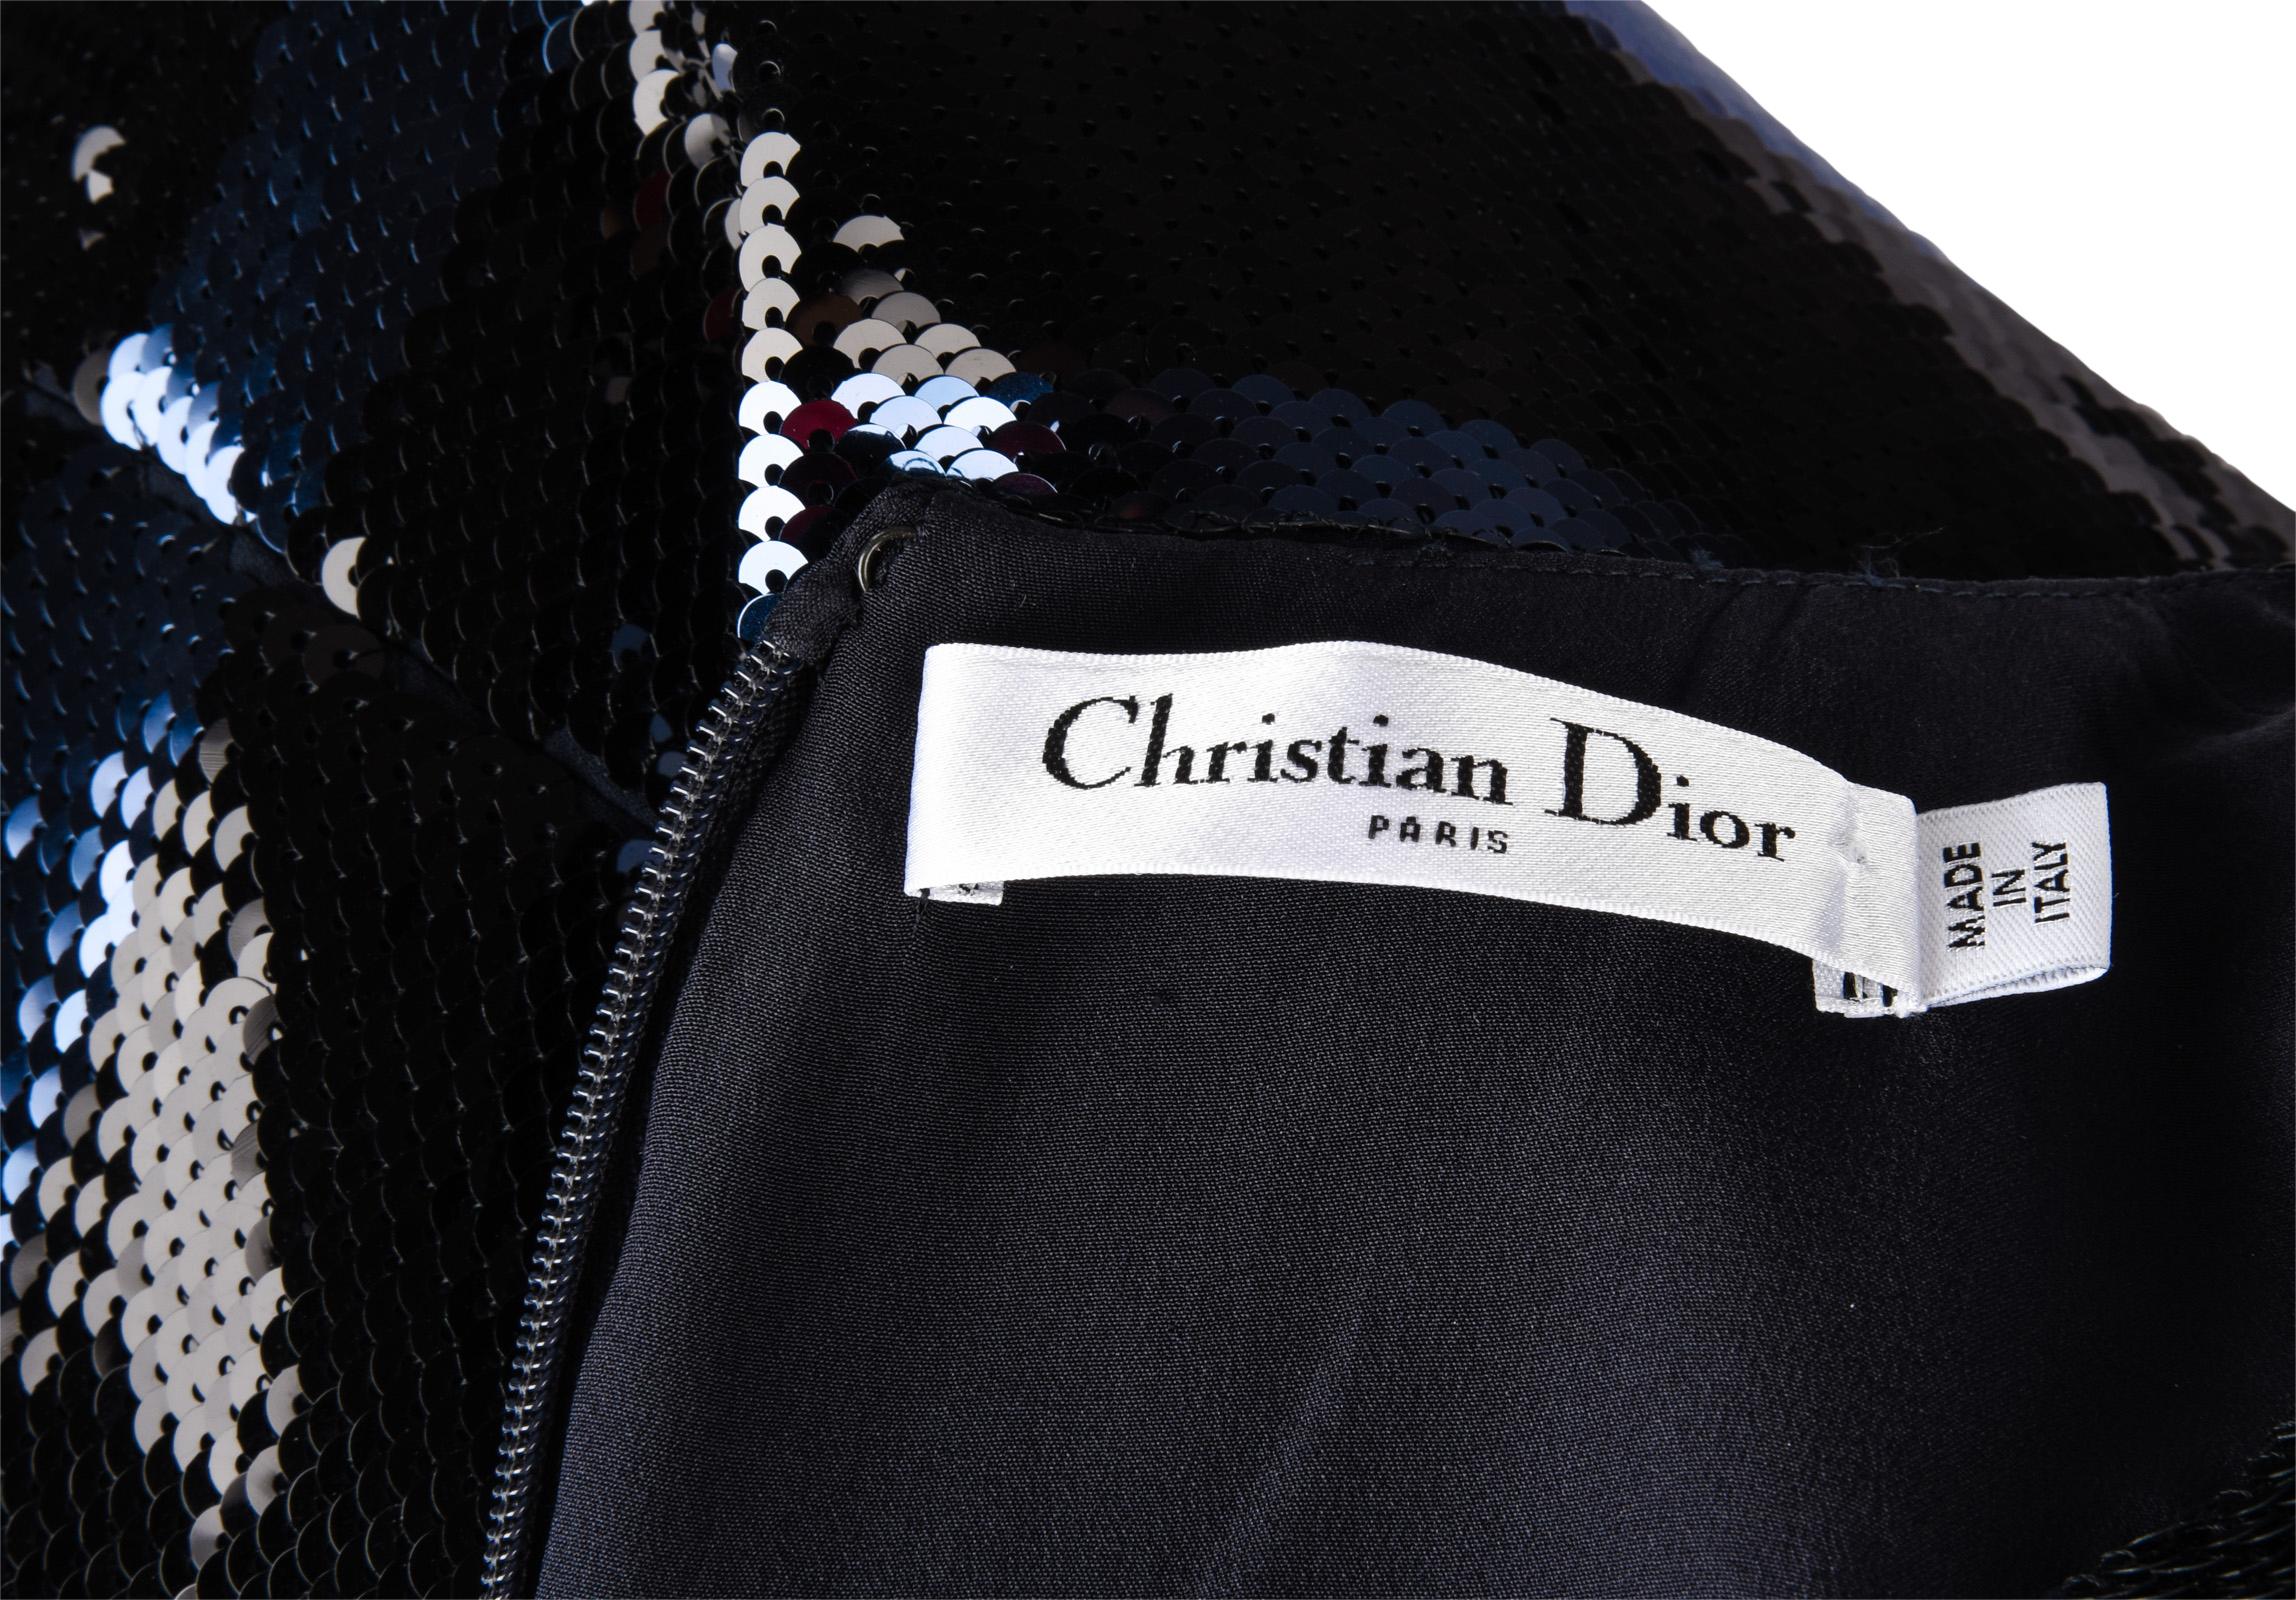 Christian Dior Dress Striped Sequin Embellished Navy / Black 6 10